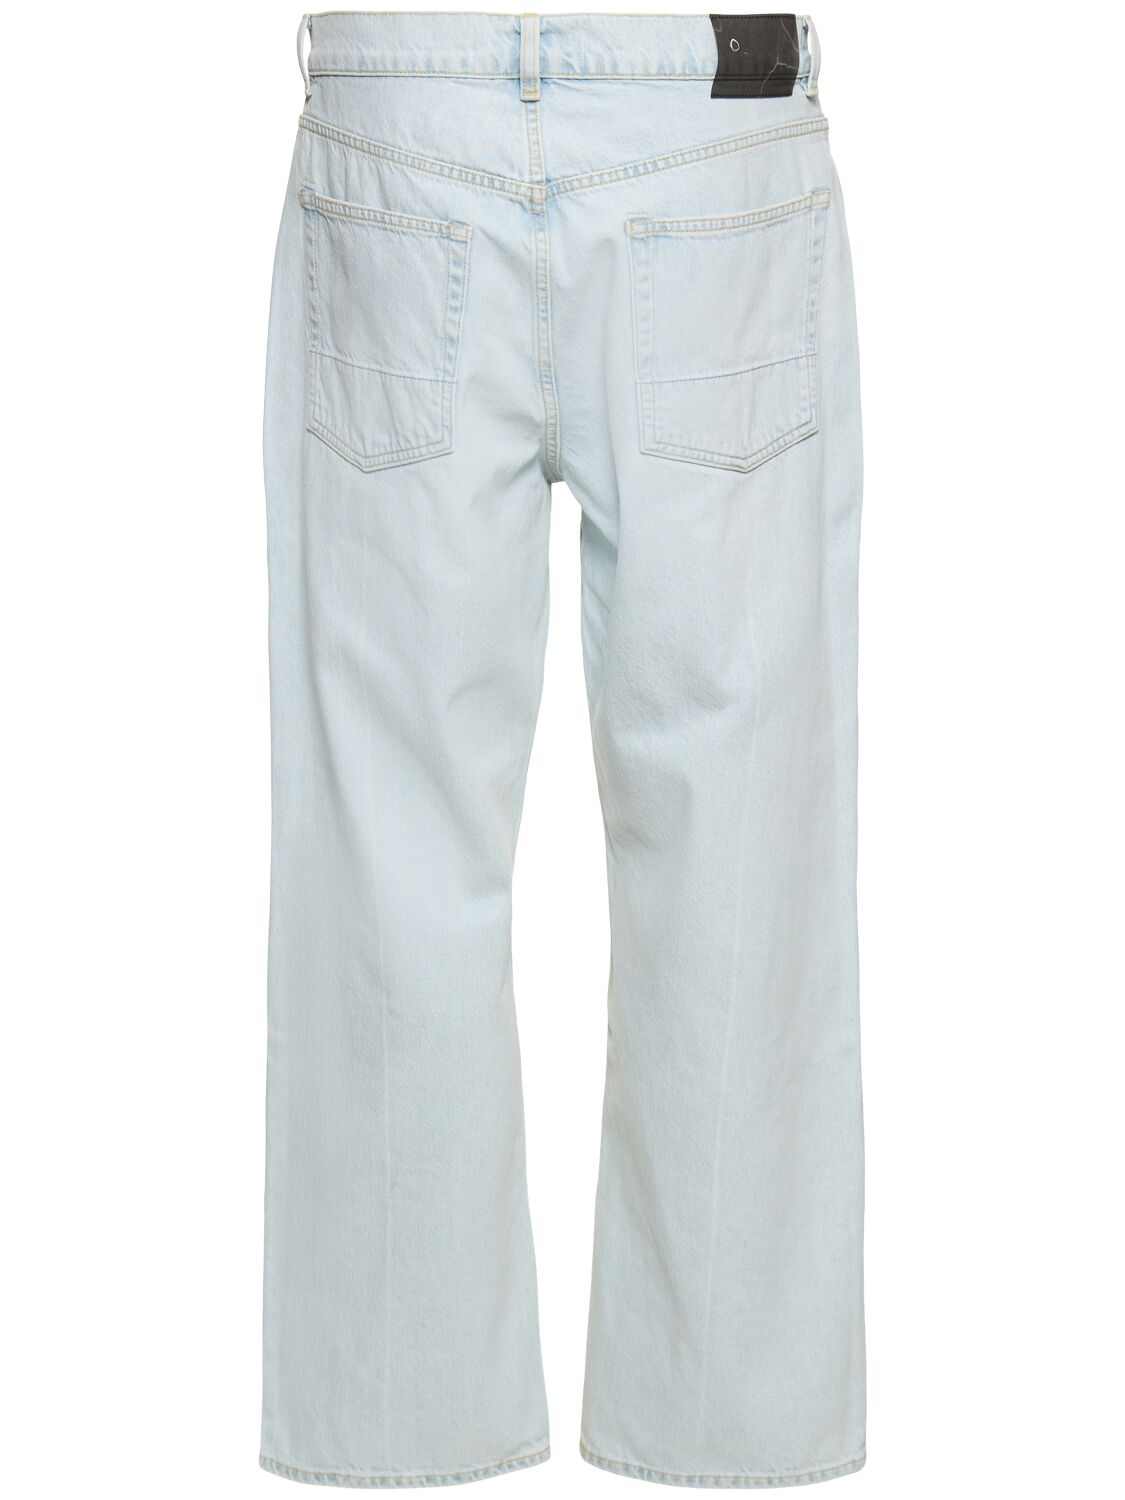 25.5厘米EXTENDED THIRD CUT棉质牛仔裤